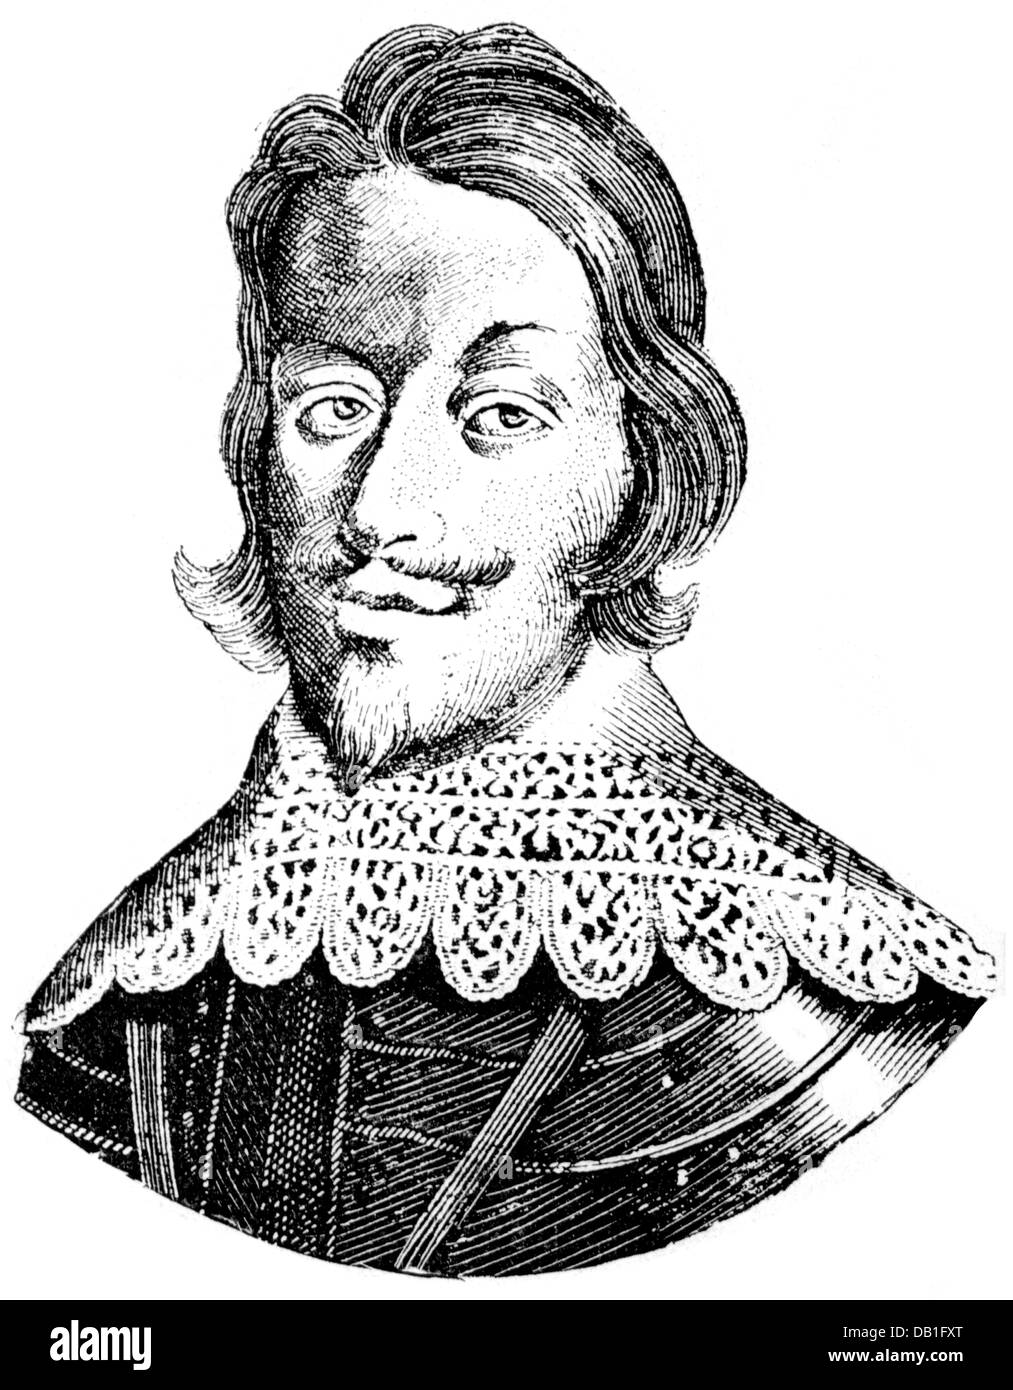 Ferdinand III, 13.7.1608 - 2.4.1657, Kaiser des Heiligen Römischen Reiches 22.12.1637 - 2.4.1657, Portrait, Holzstich, 19. Jahrhundert Stockfoto